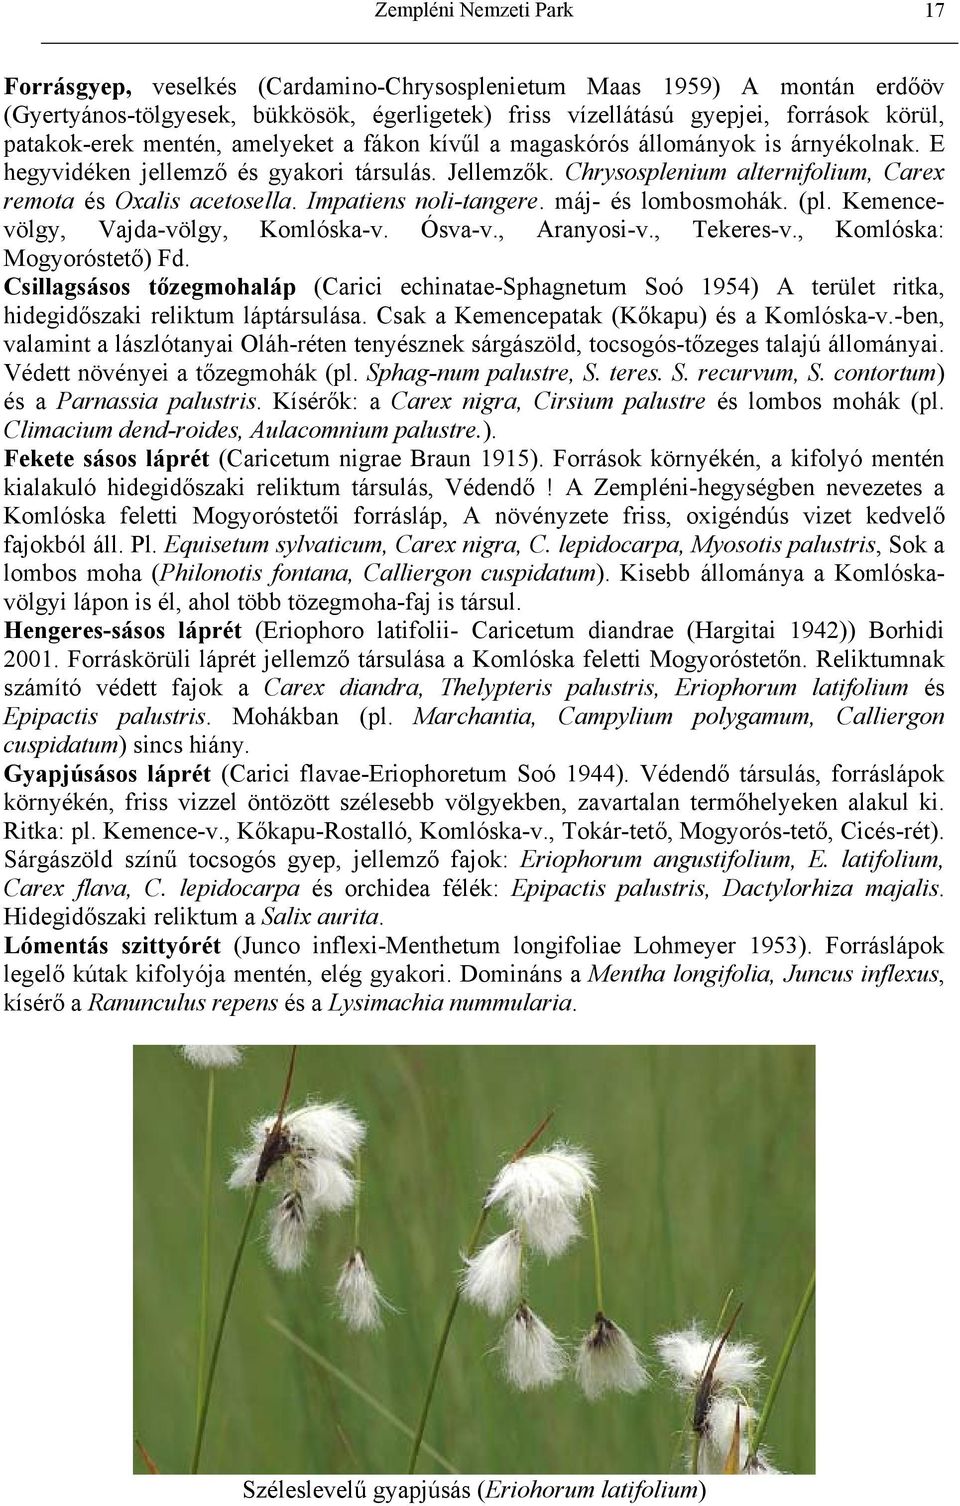 Chrysosplenium alternifolium, Carex remota és Oxalis acetosella. Impatiens noli-tangere. máj- és lombosmohák. (pl. Kemencevölgy, Vajda-völgy, Komlóska-v. Ósva-v., Aranyosi-v., Tekeres-v.